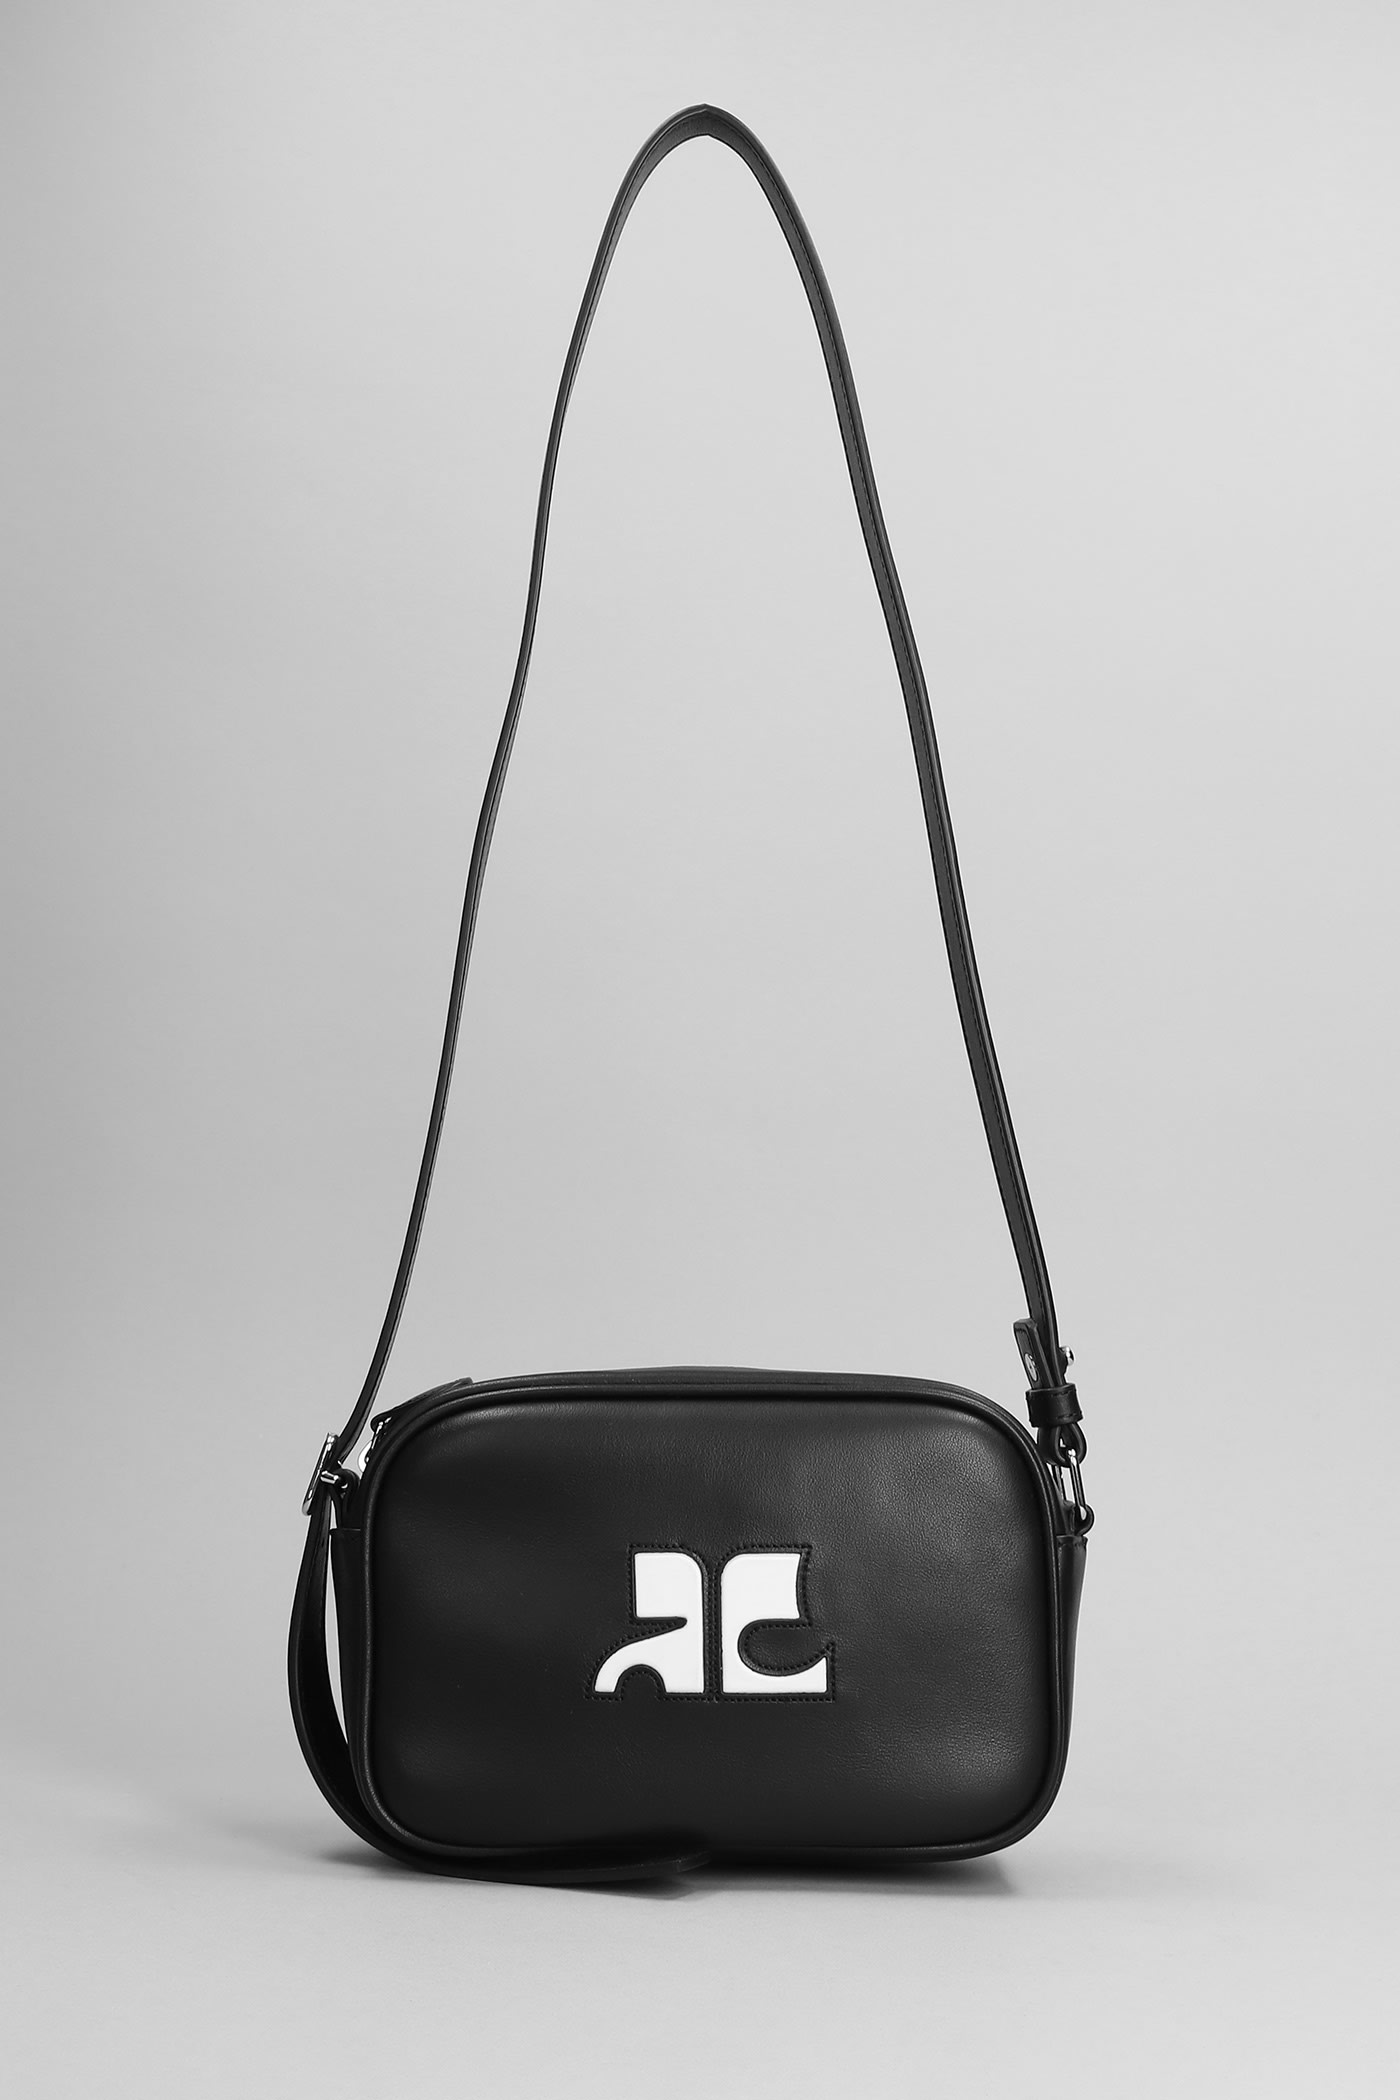 Courrèges Shoulder Bag In Black Leather